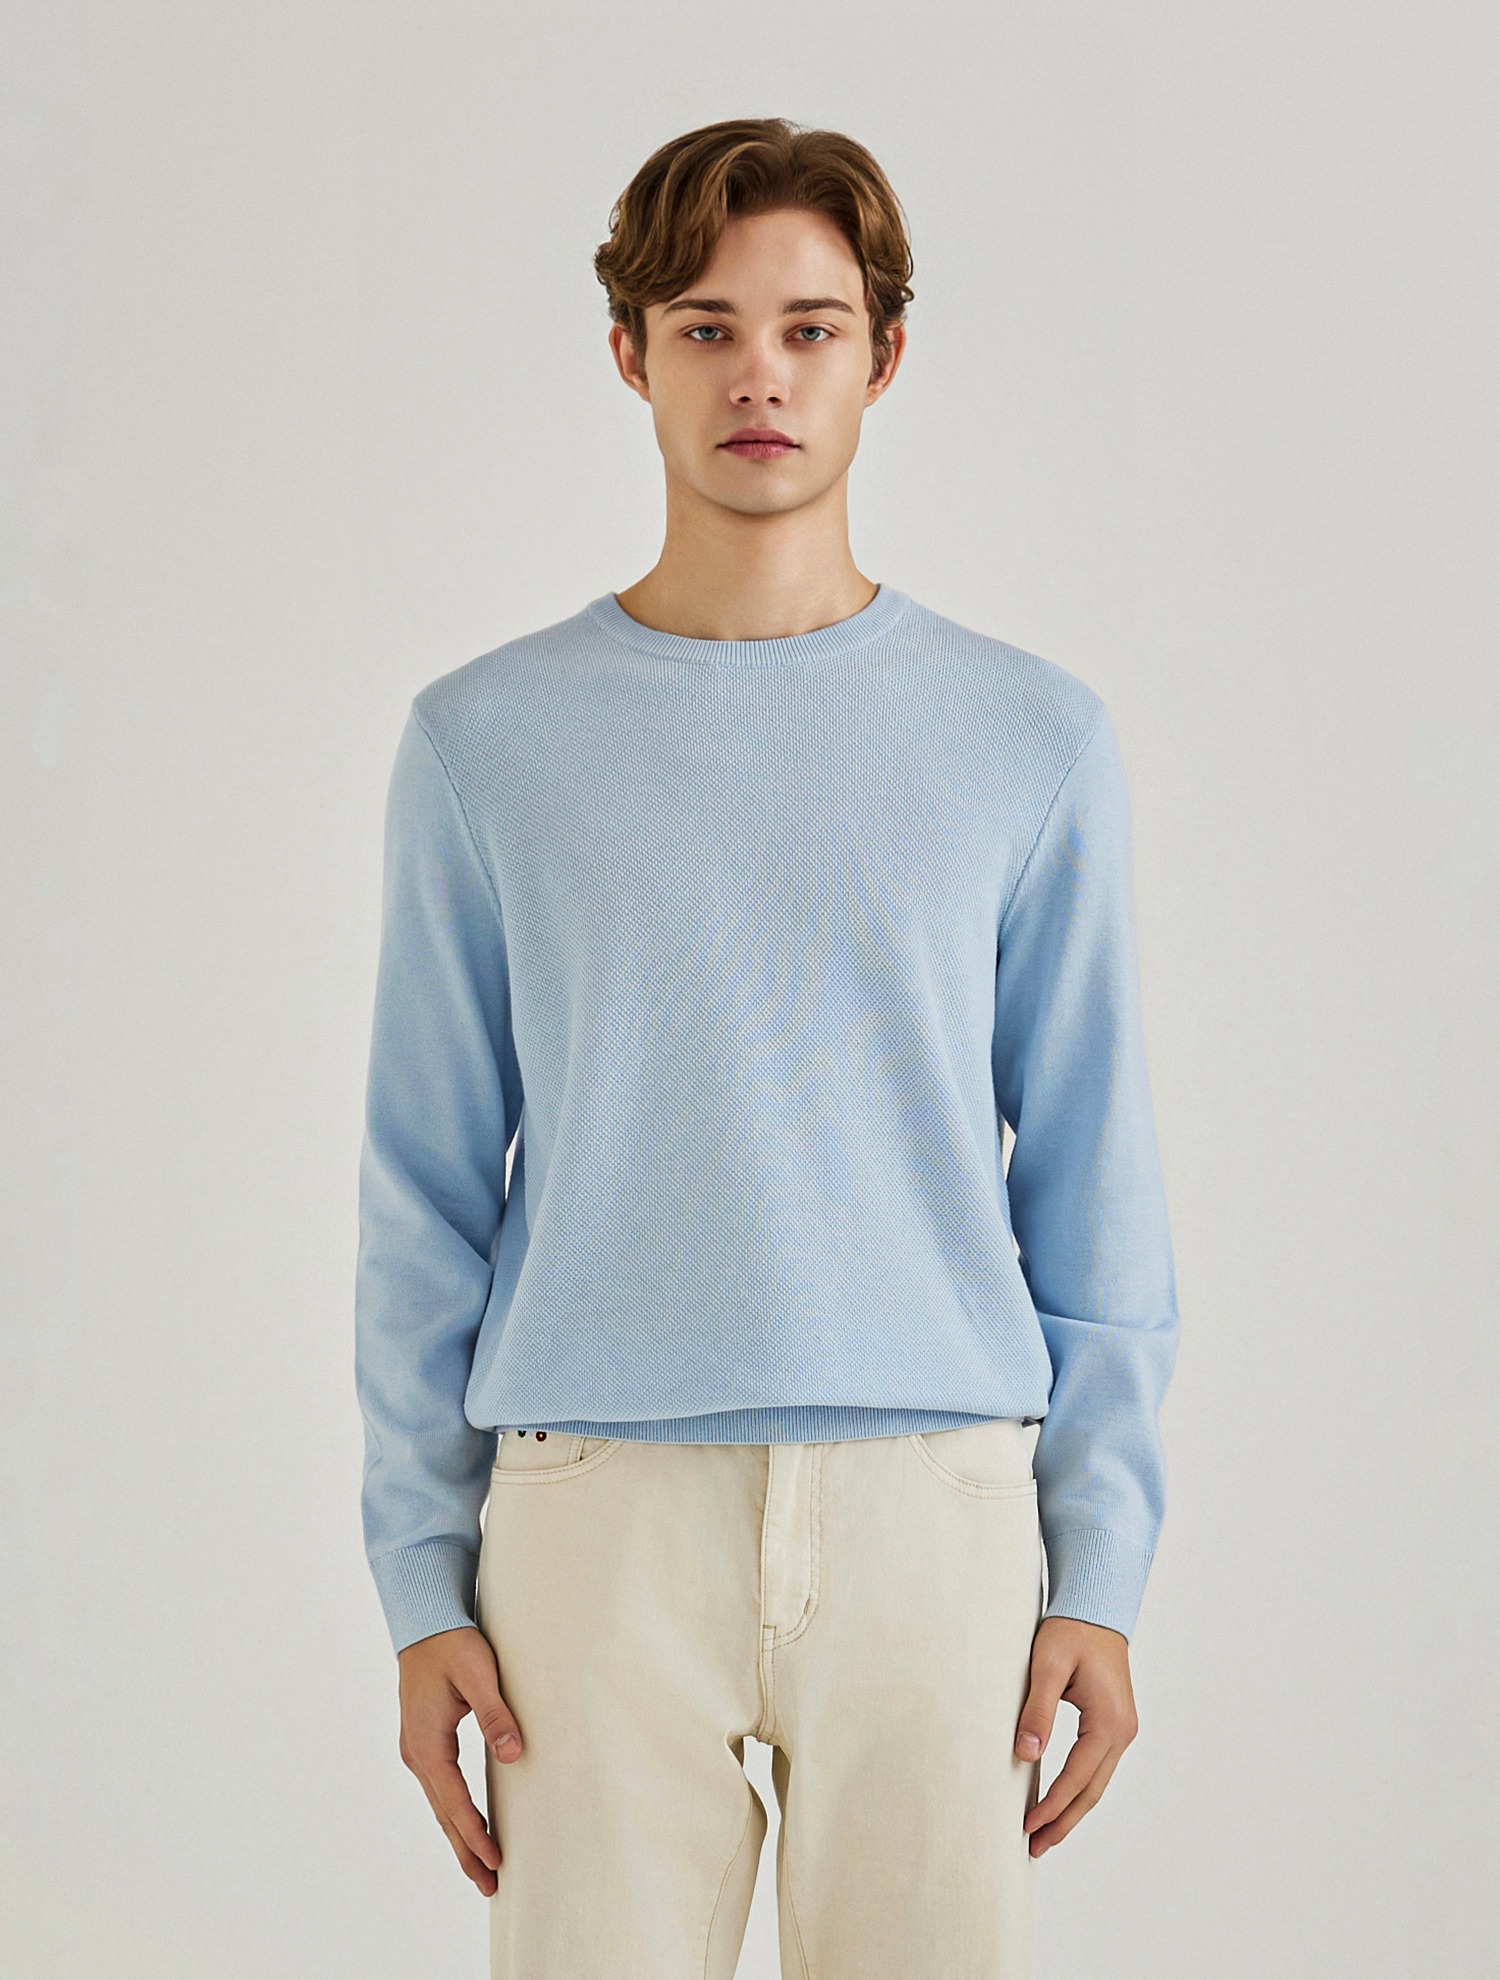 배색 포인트 라운드 스웨터 블루 (AMSERD10141)